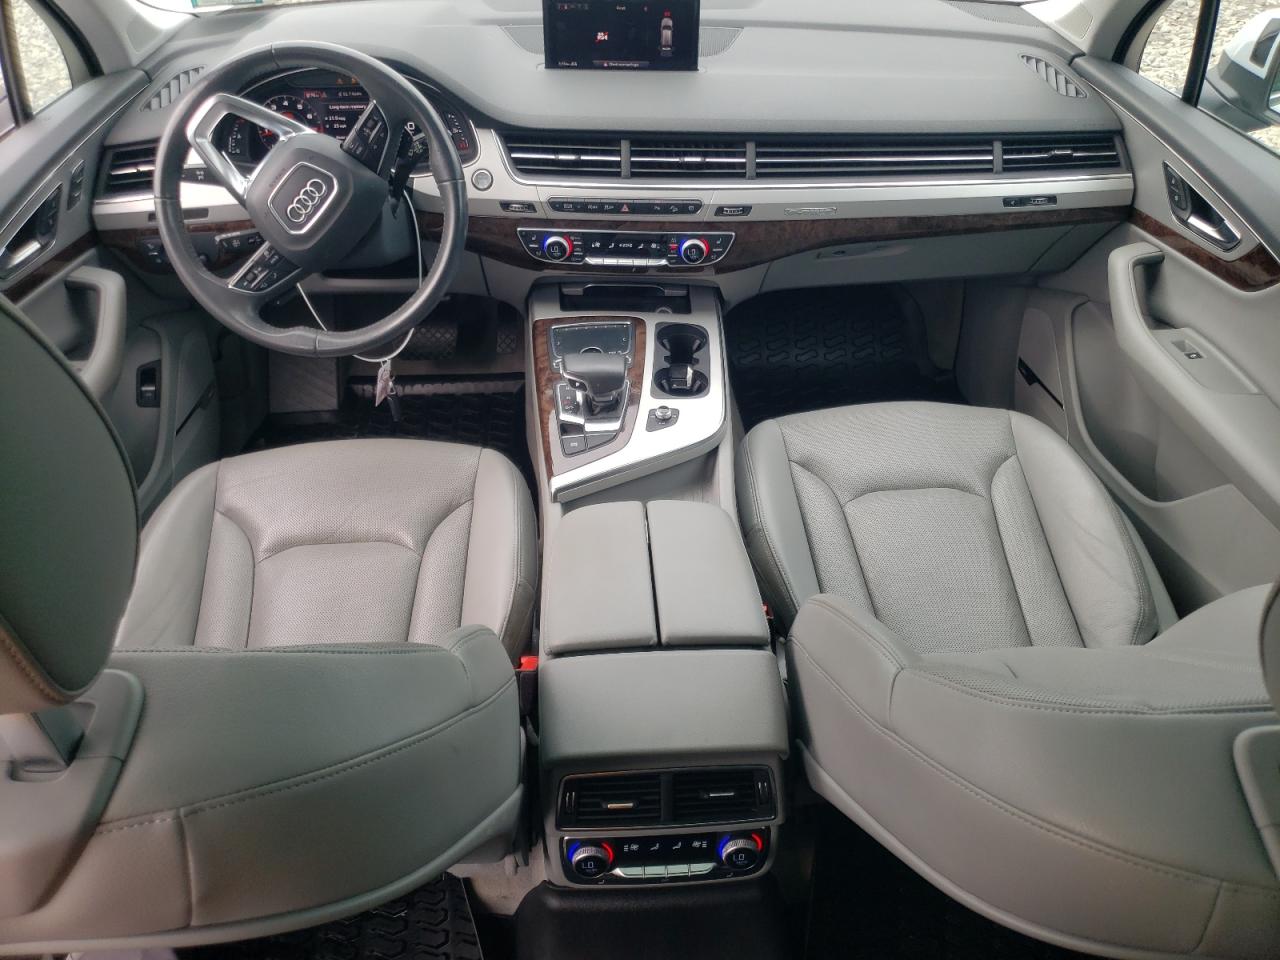 2018 Audi Q7 Premium Plus VIN: WA1LHAF73JD021400 Lot: 64415494